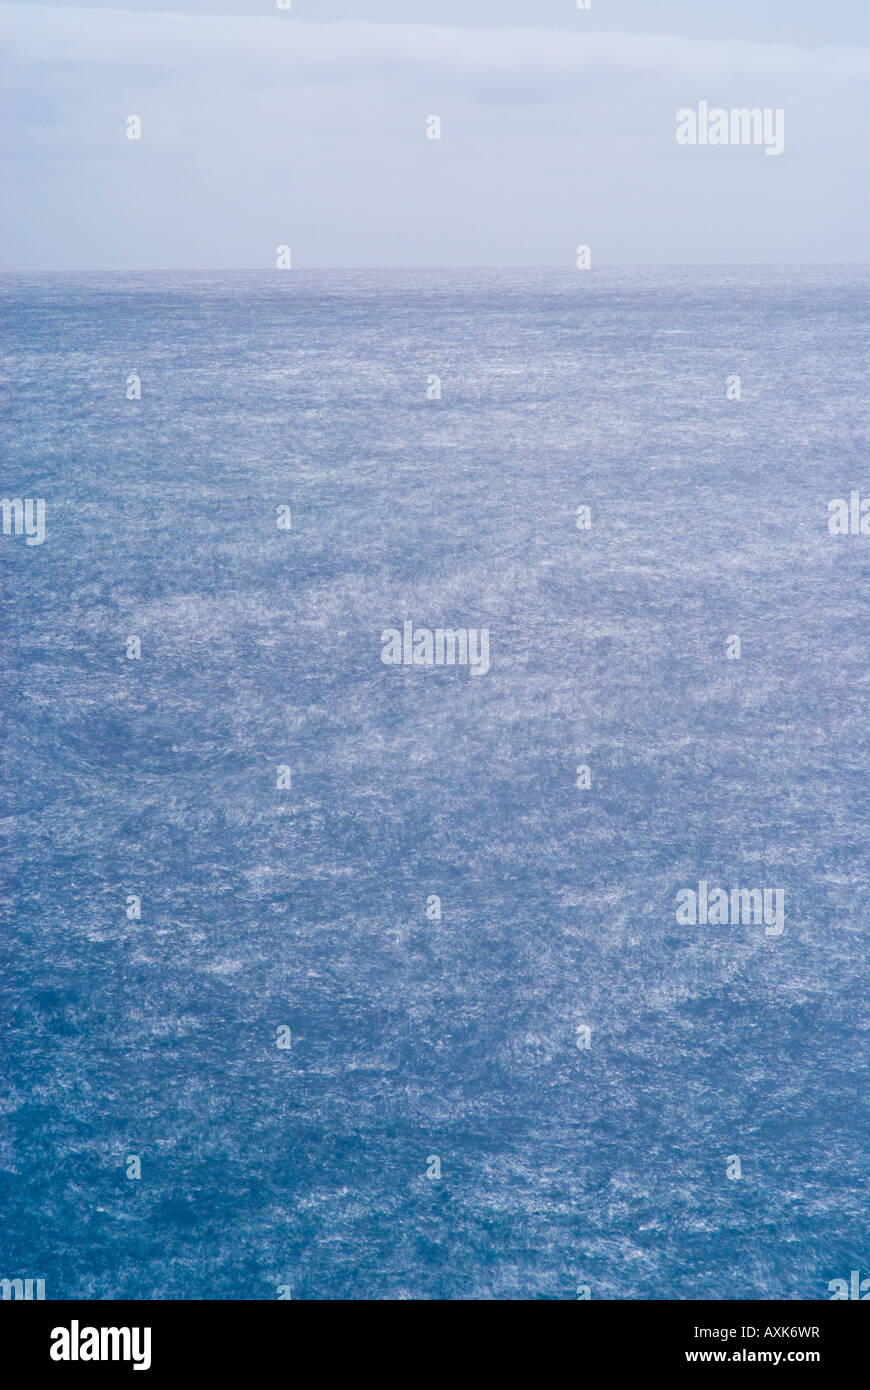 La exposición a largo plazo de sun reflexiones sobre la superficie del océano Atlántico Foto de stock